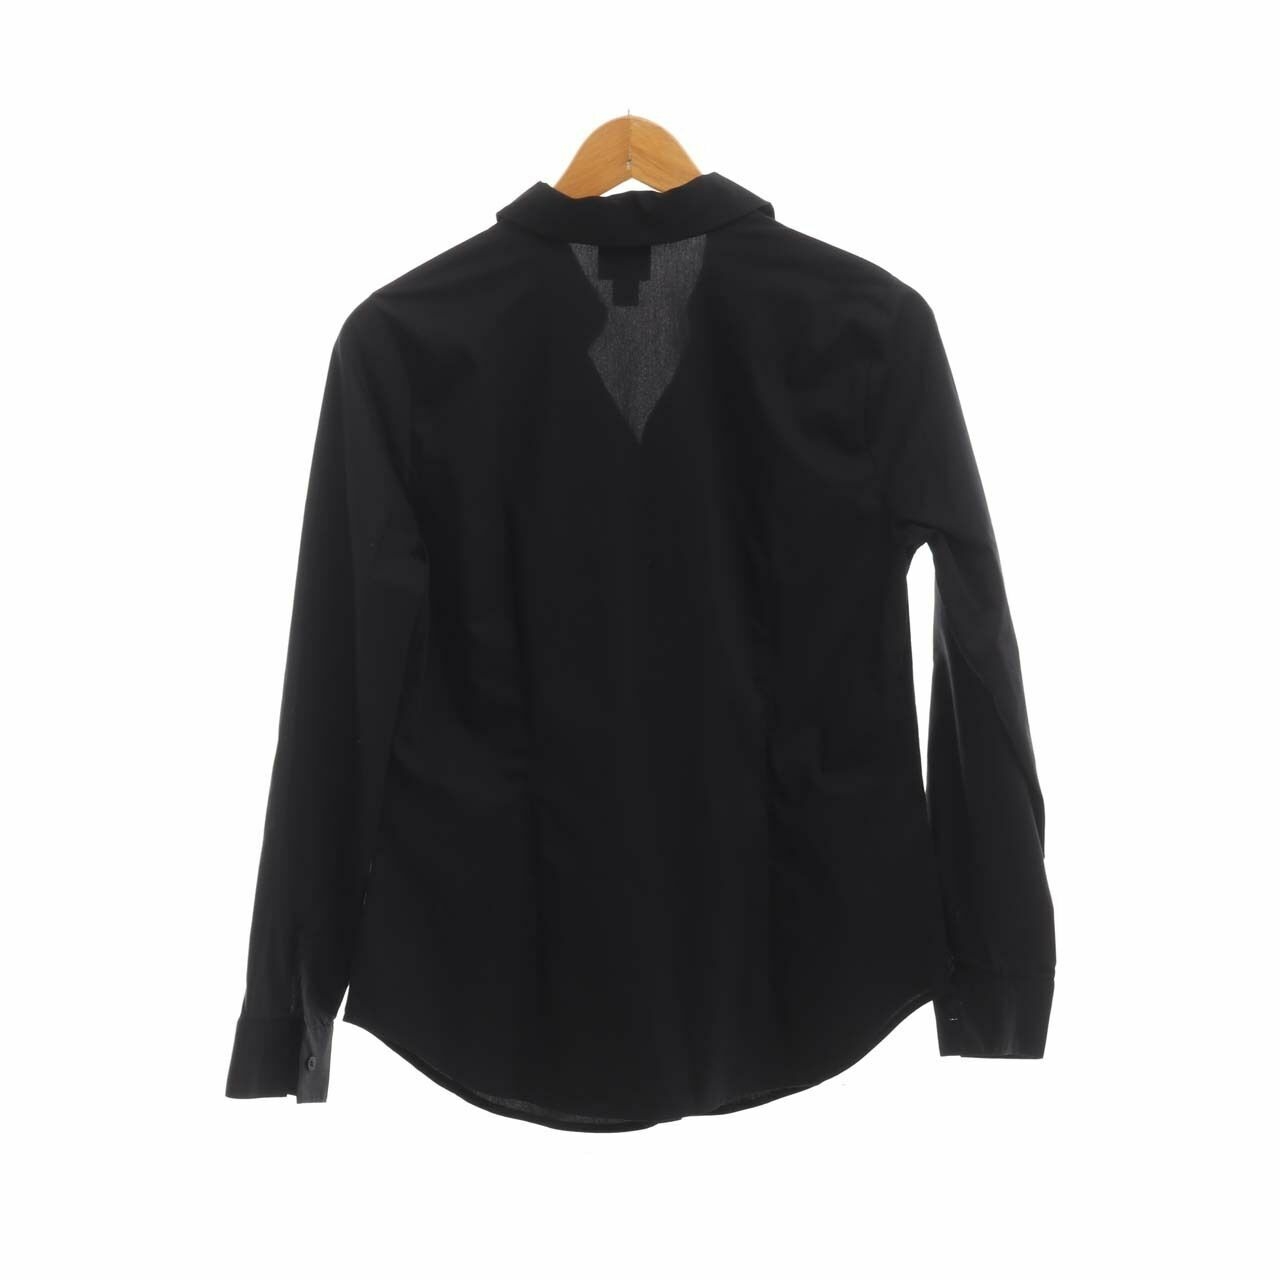 Worthington Black Long Sleeve Shirt